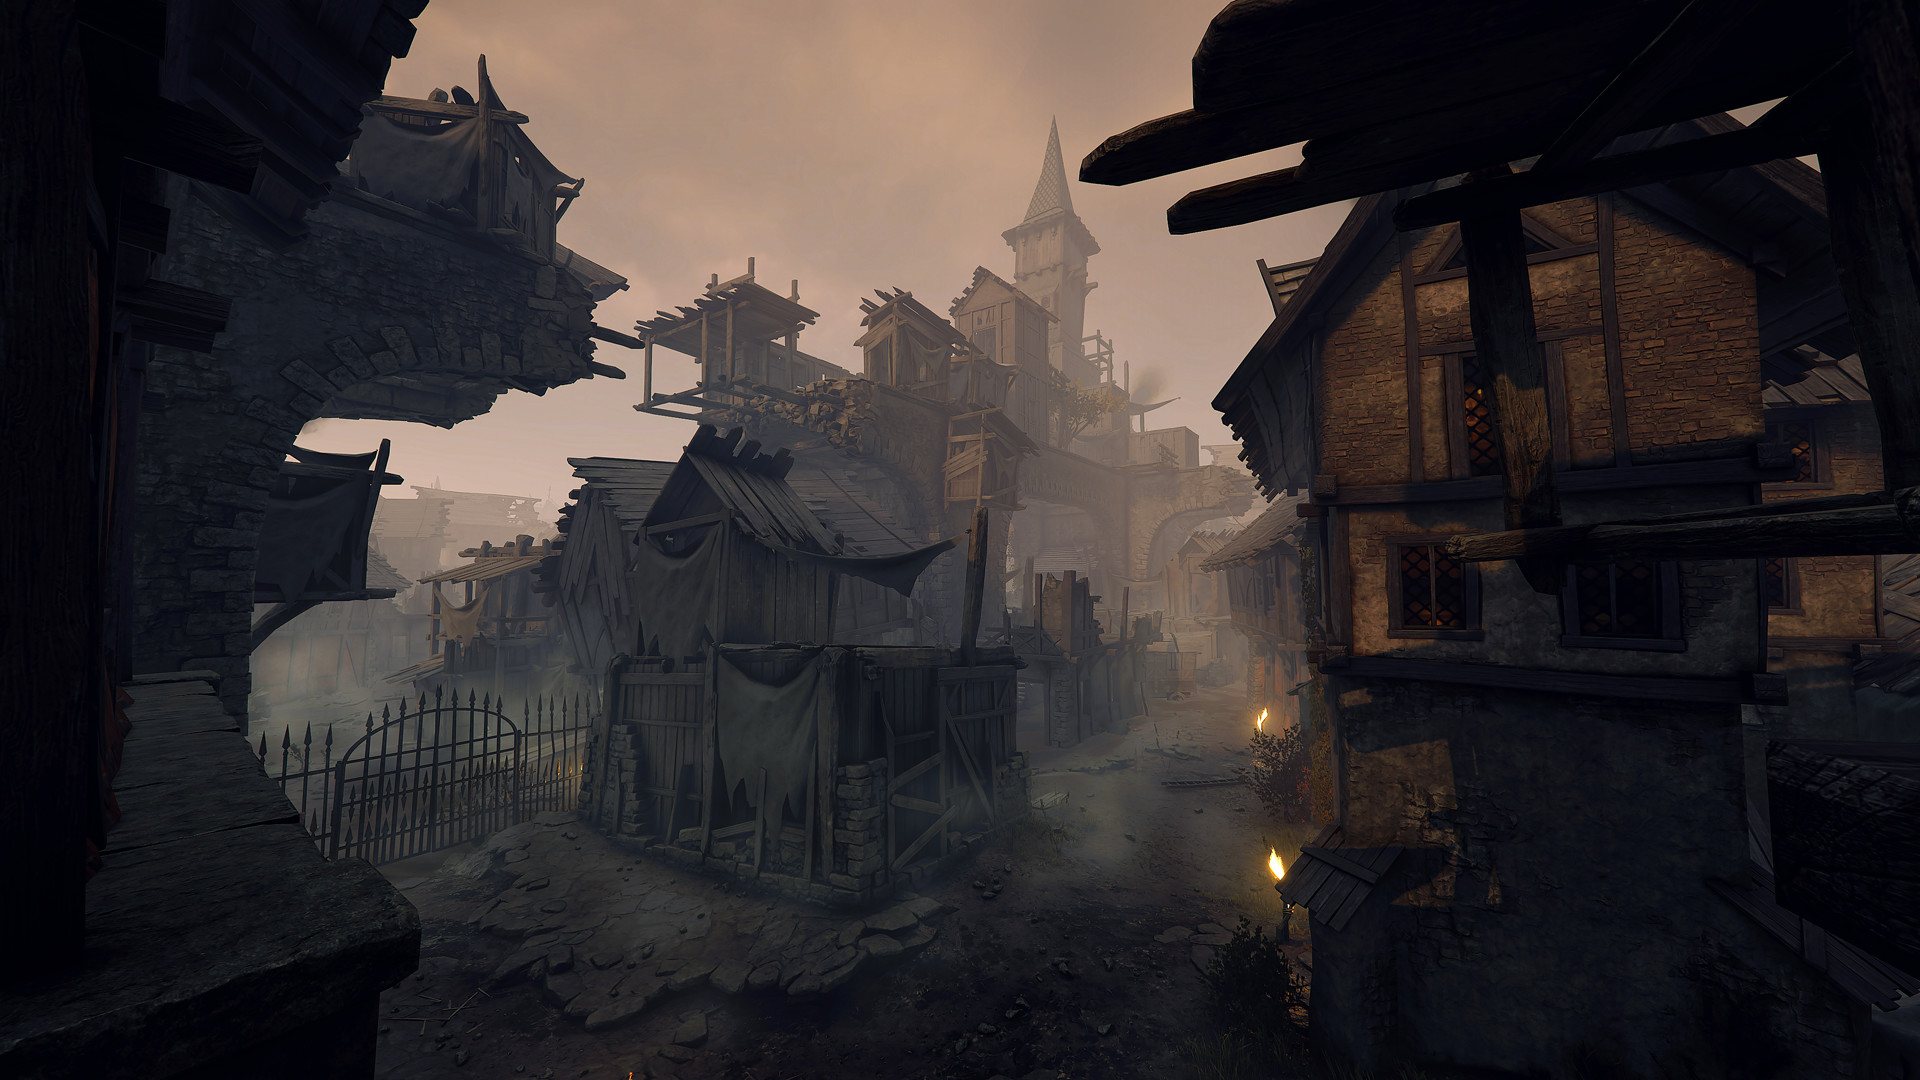 Warhammer: Vermintide 2 - Shadows Over Bögenhafen DLC Steam CD Key